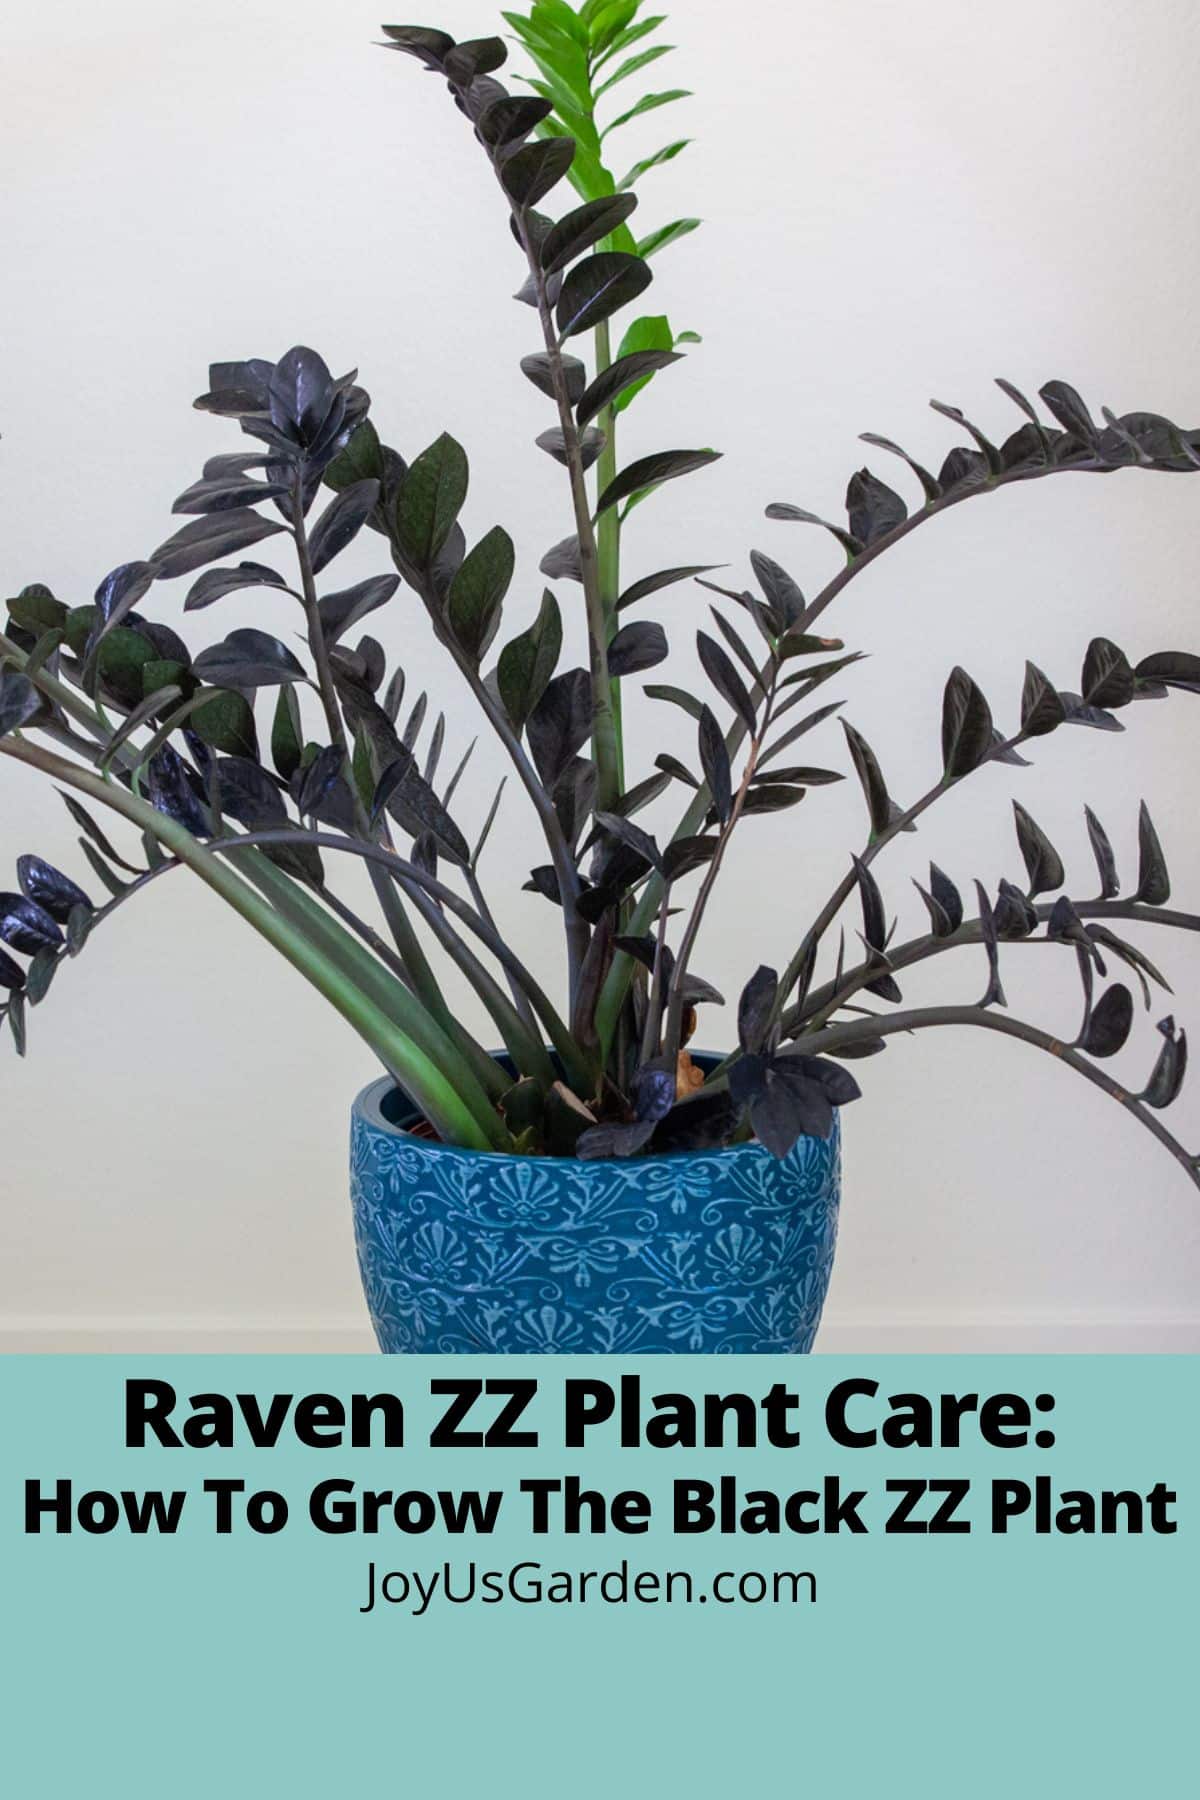  Îngrijirea plantei Raven ZZ: Cum să crești planta Black ZZ